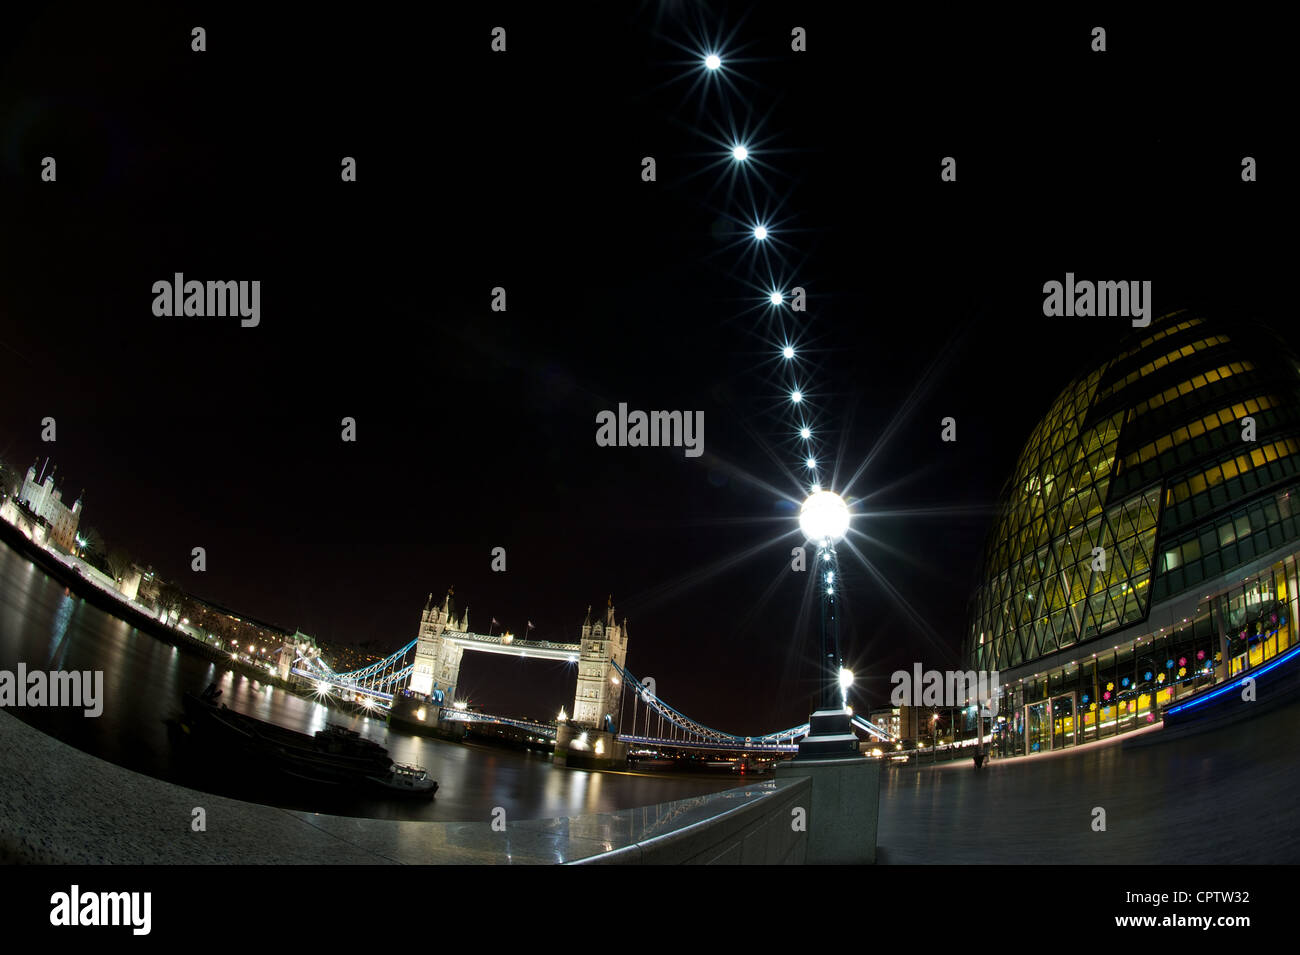 L'Hôtel de Ville, Tower Bridge et la Tour de Londres la nuit, prises avec un objectif fisheye, London, UK Banque D'Images